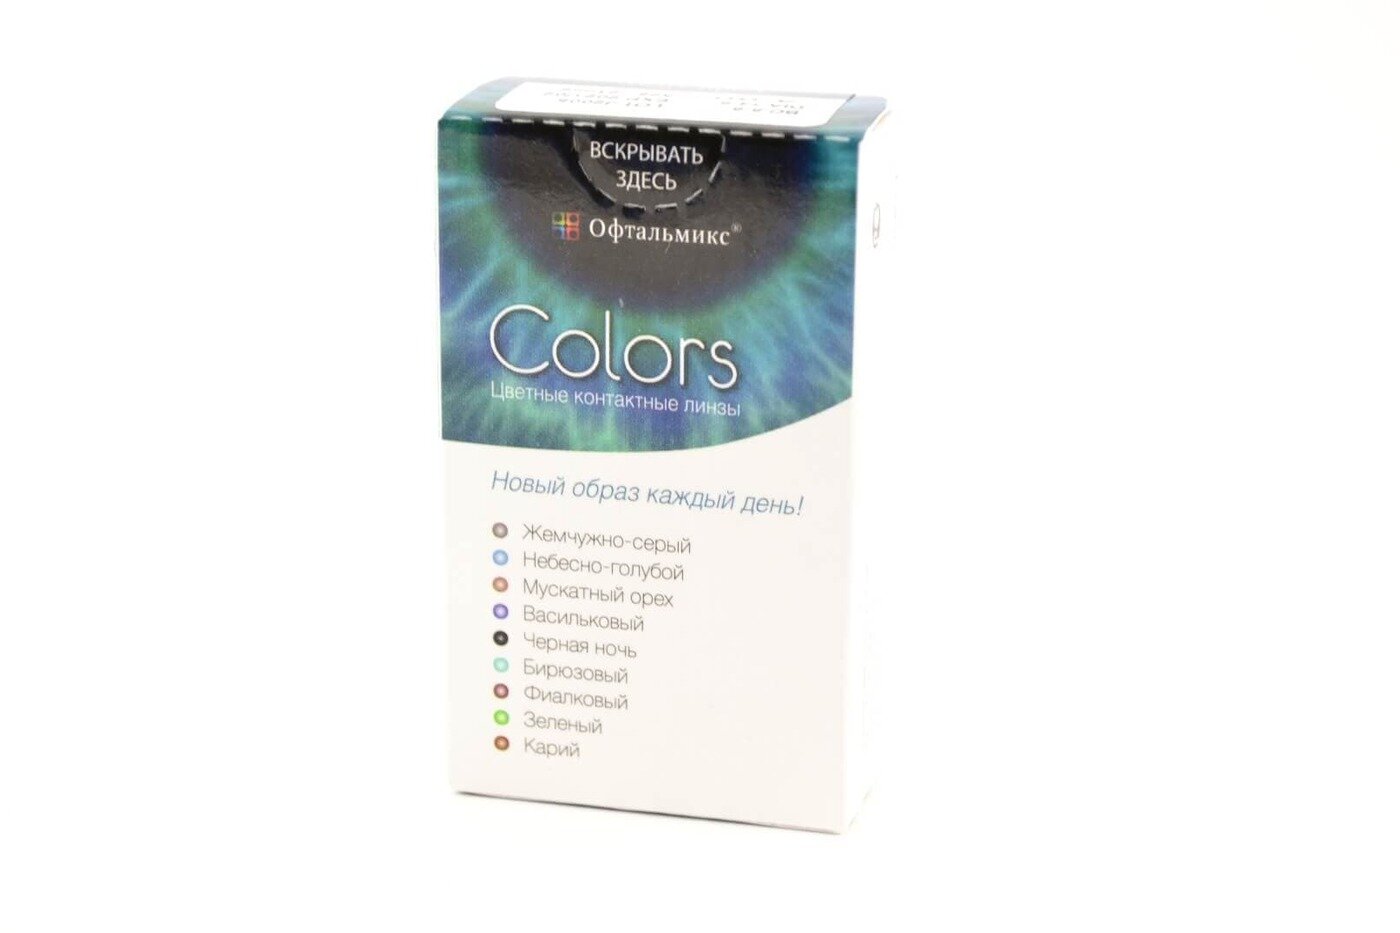 Офтальмикс Colors New (2 линзы)-3.00 R.8.6 Olive(Оливковый)